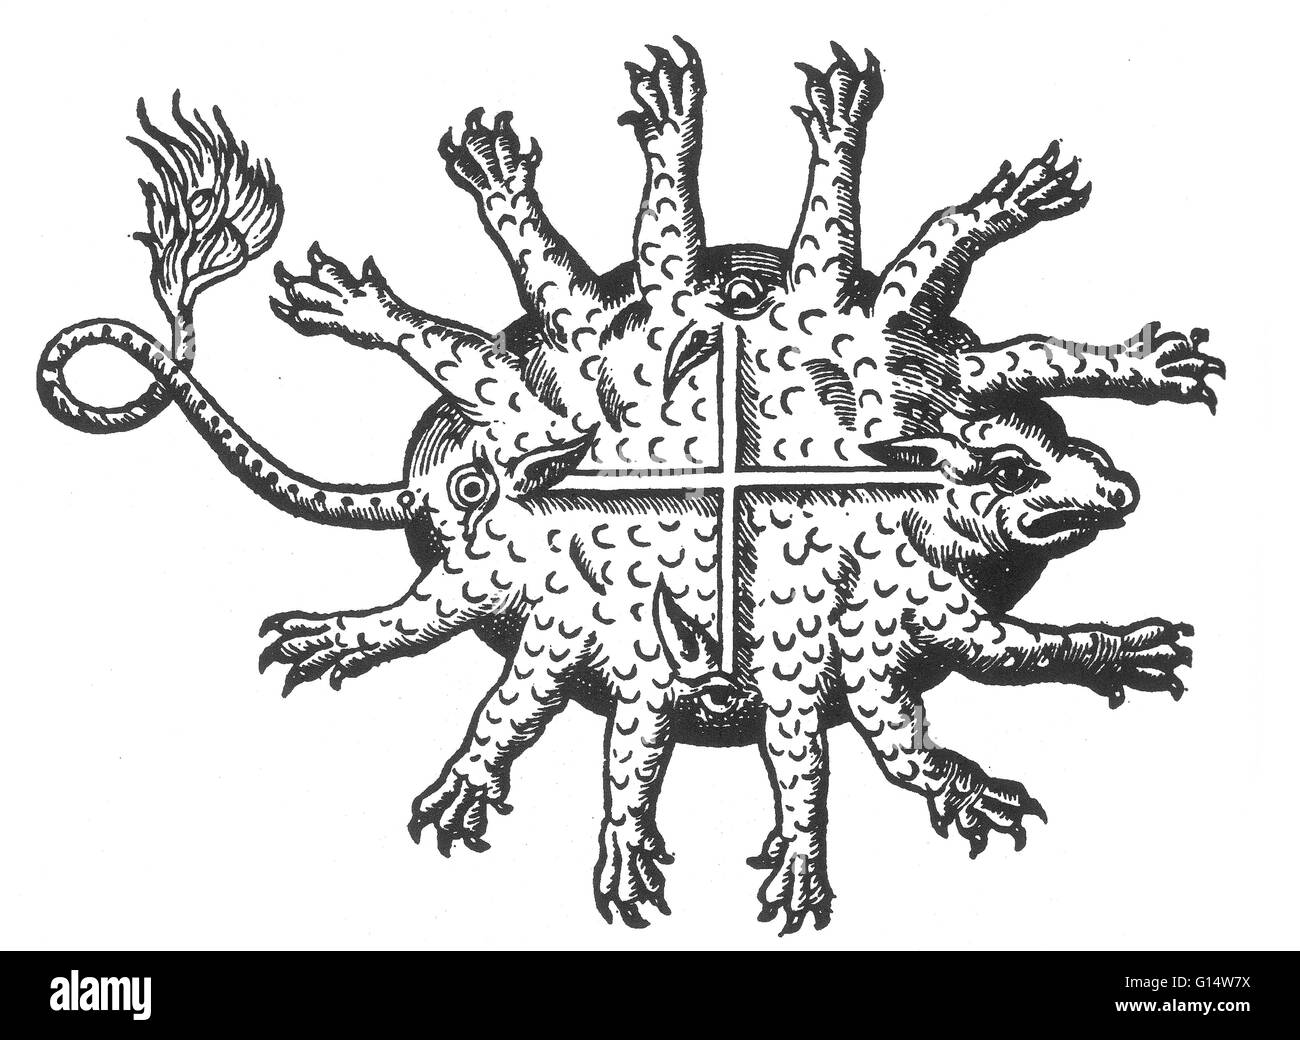 Holzschnitt von einer "sehr monströsen Tier, das in Afrika geboren wird" von Des Monstres et Prodiges von Ambroise Paré, 1573. Des Monstres ist gefüllt mit unbegründeten Konten der Sea Devils, marine Sauen und monströse Tiere mit menschlichen Gesichtern. Mit seinen umfangreichen d Stockfoto